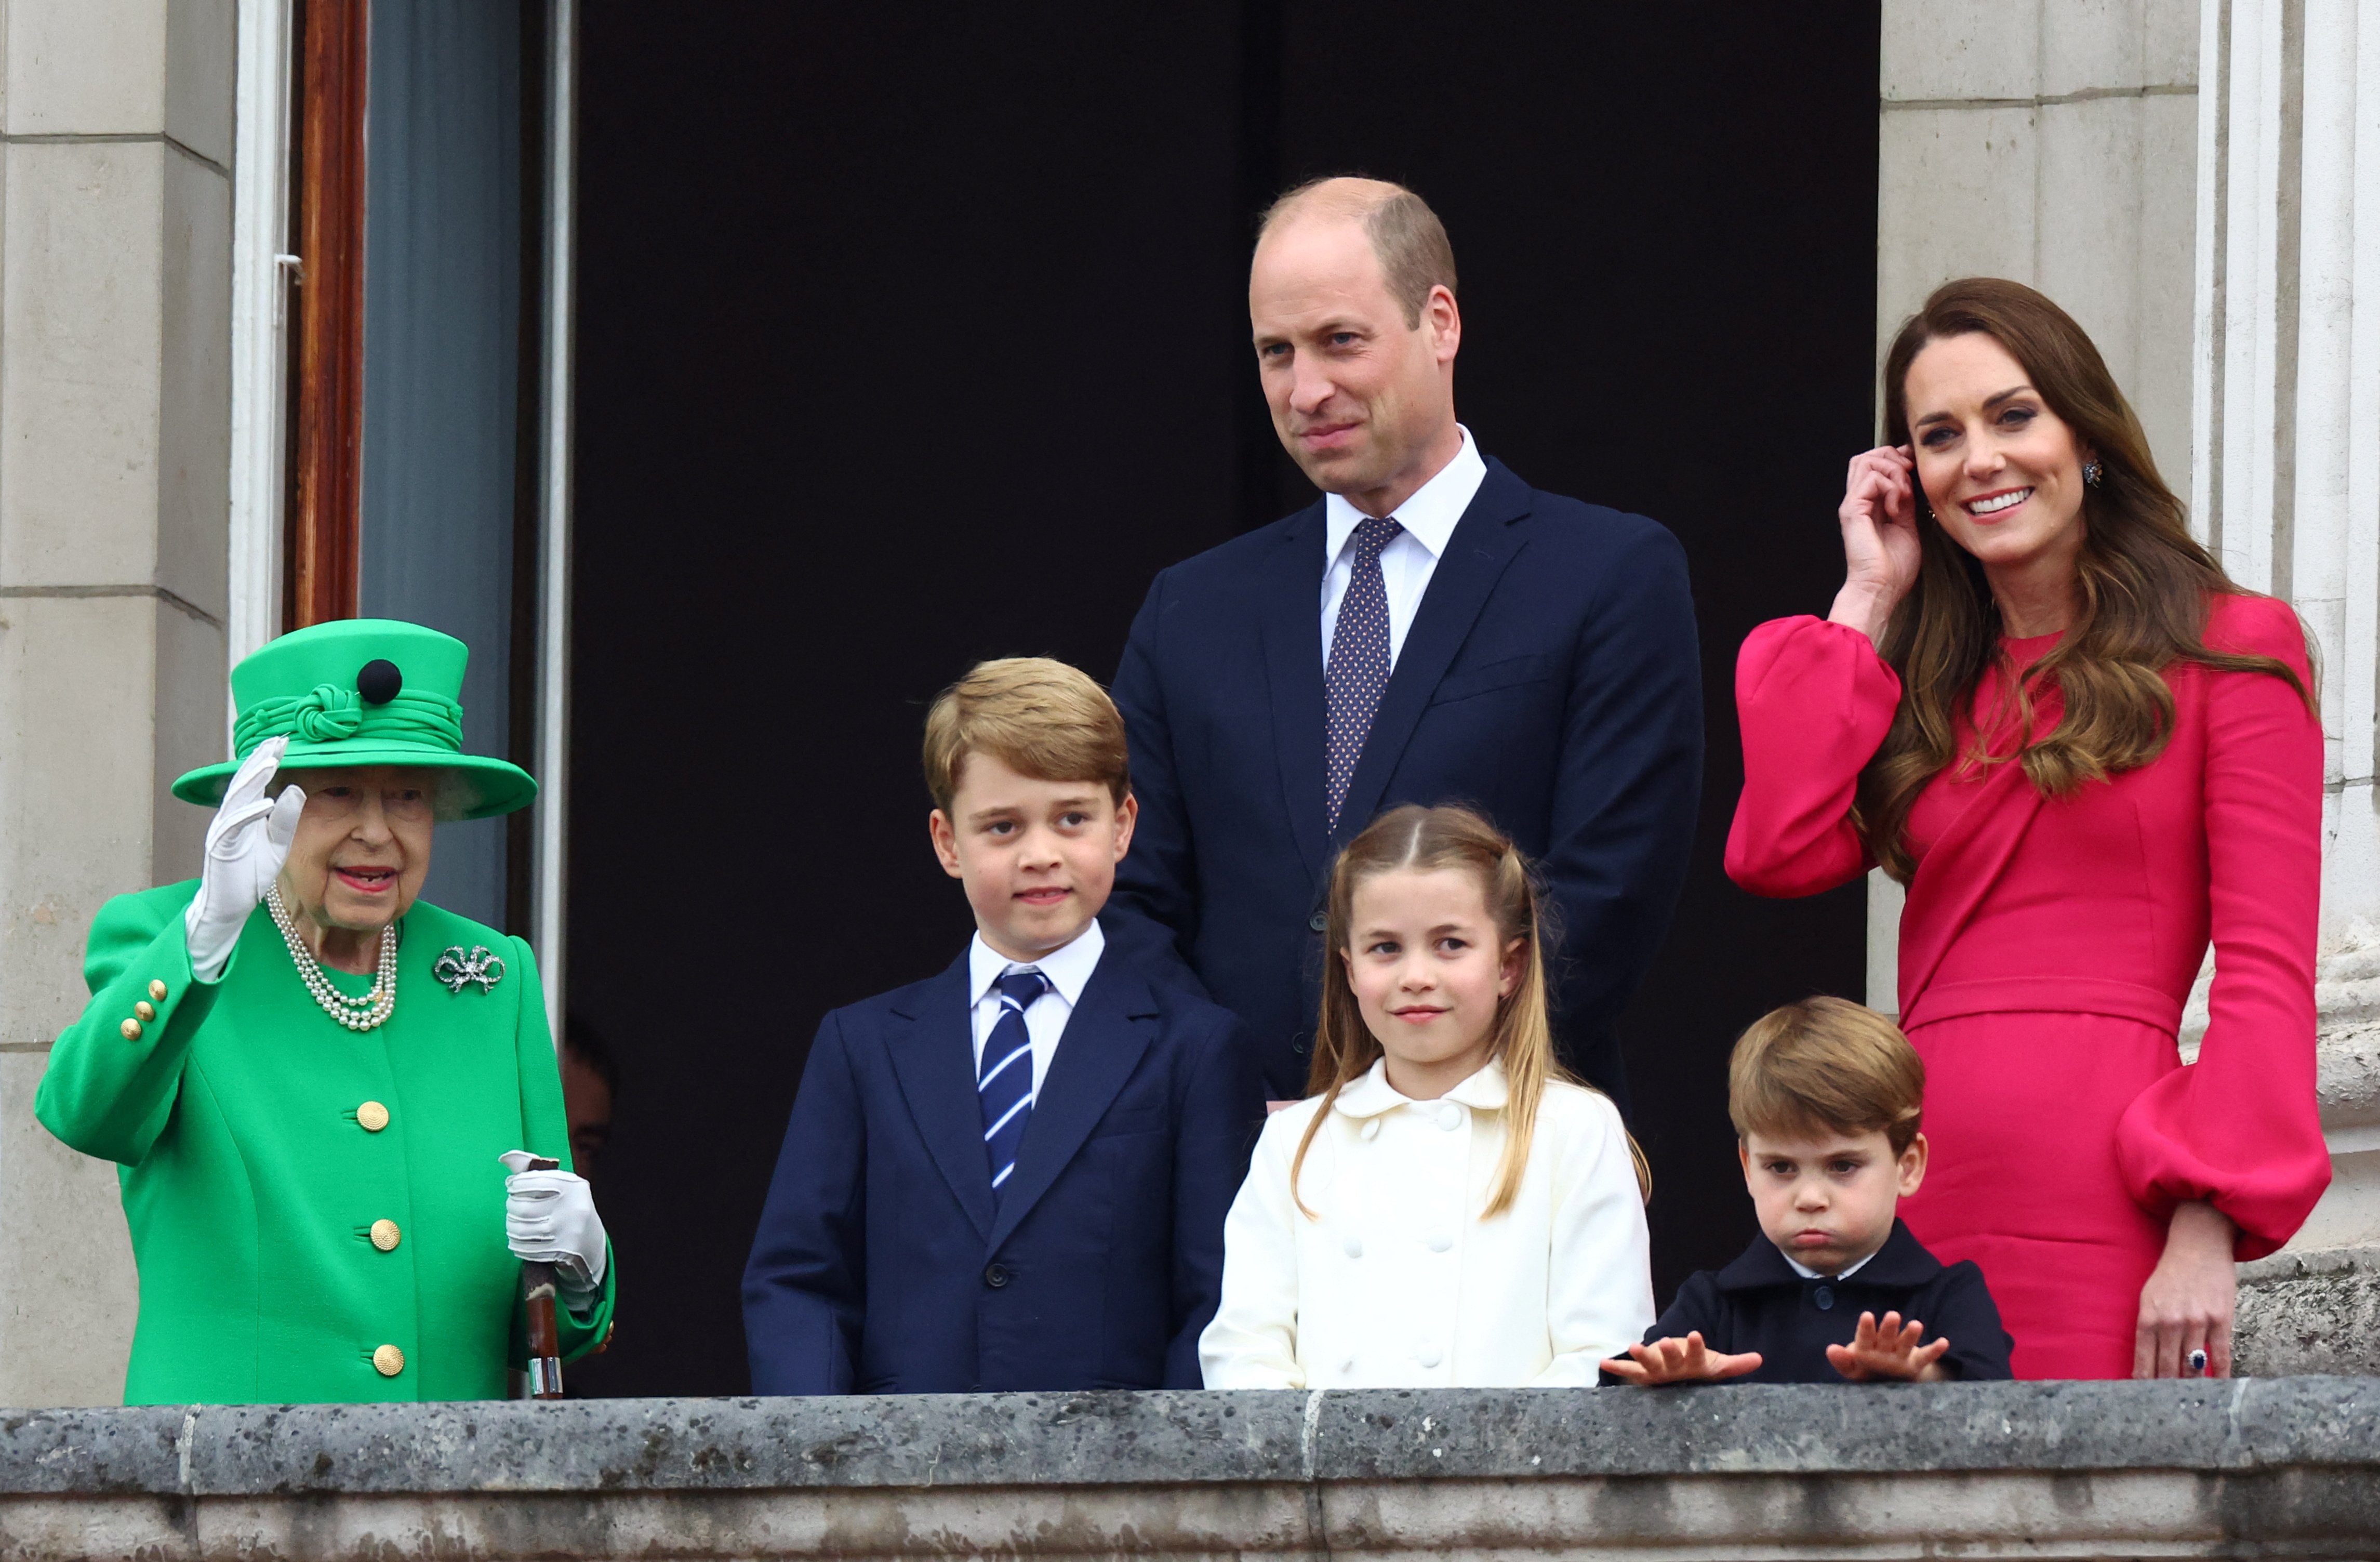 La reina Elizabeth II, el príncipe George, el príncipe William, la princesa Charlotte, el príncipe Louis y Catherine, duquesa de Cambridge  durante el desfile del Jubileo de Platino el 05 de junio 2022 en Londres, Inglaterra. | Foto: Getty Images